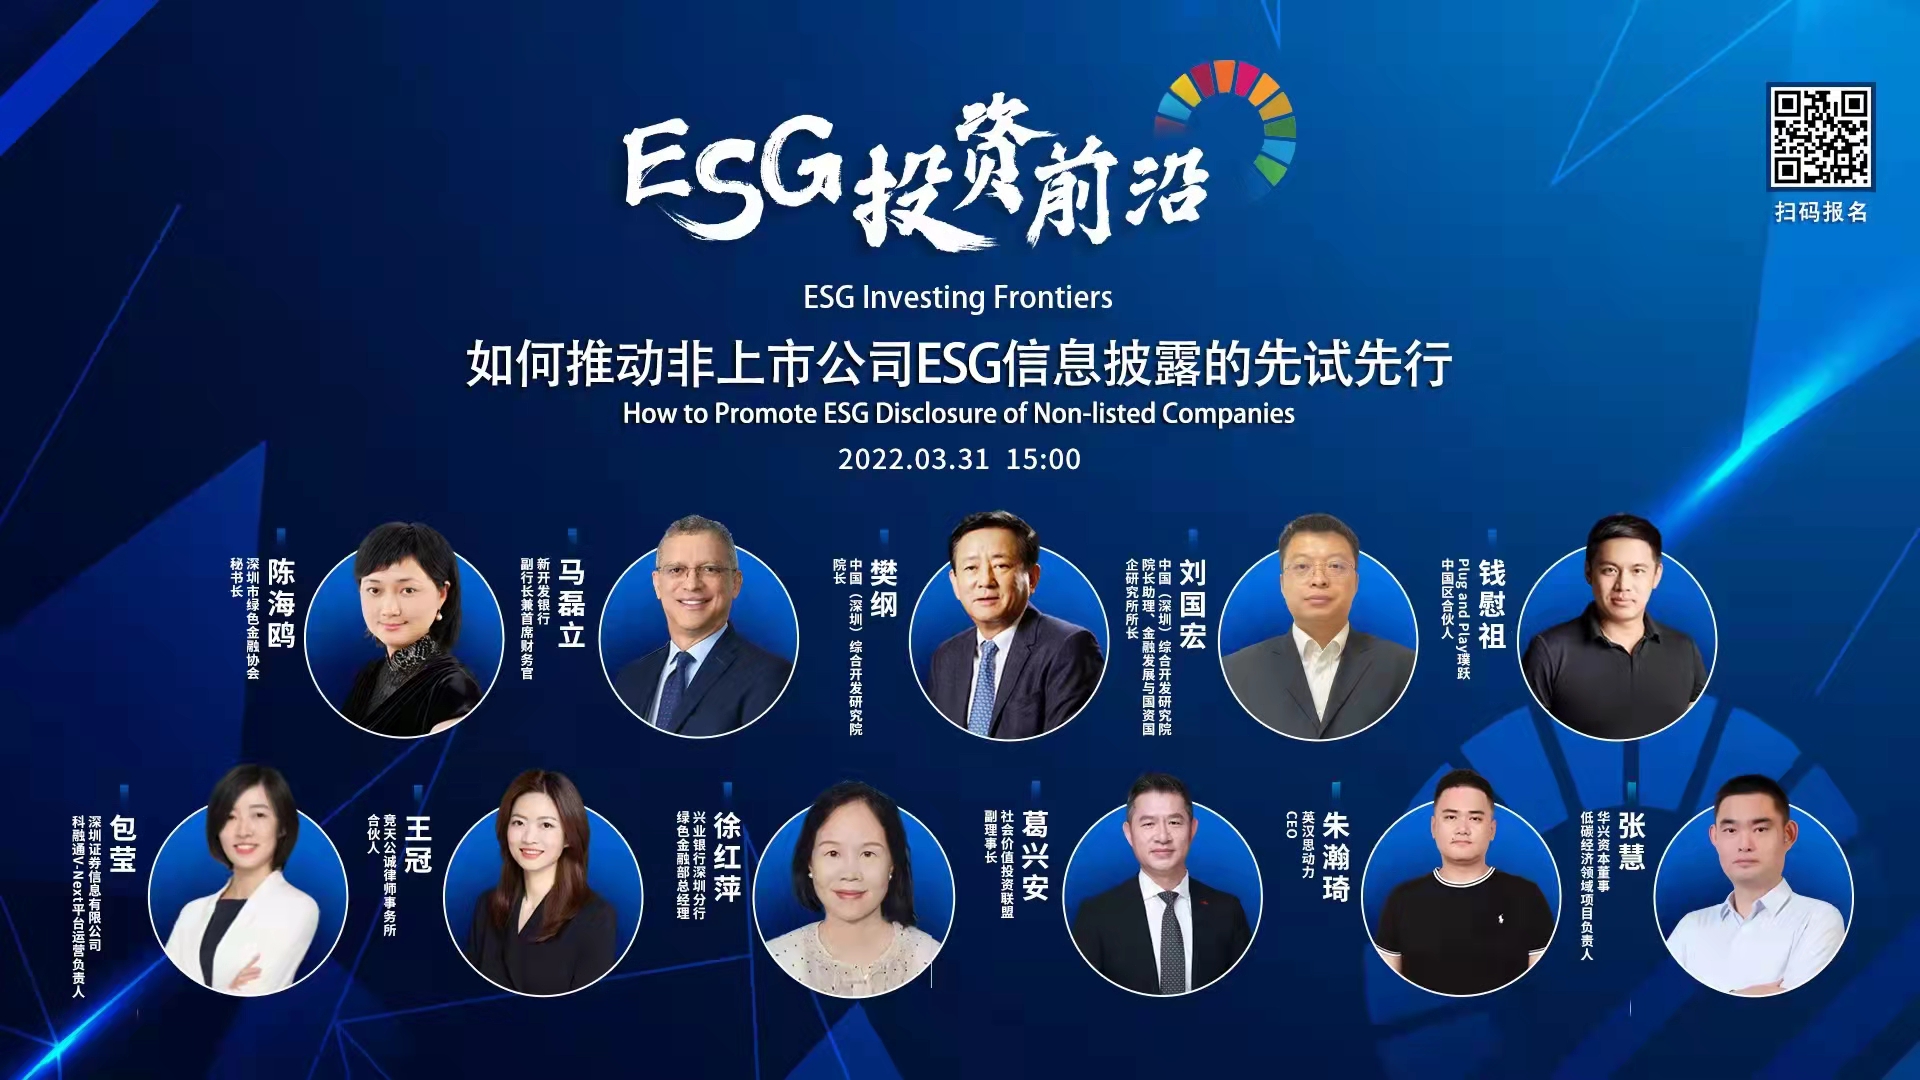 深圳市绿色金融协会联合发起 | “ESG投资前沿论坛”成功举行